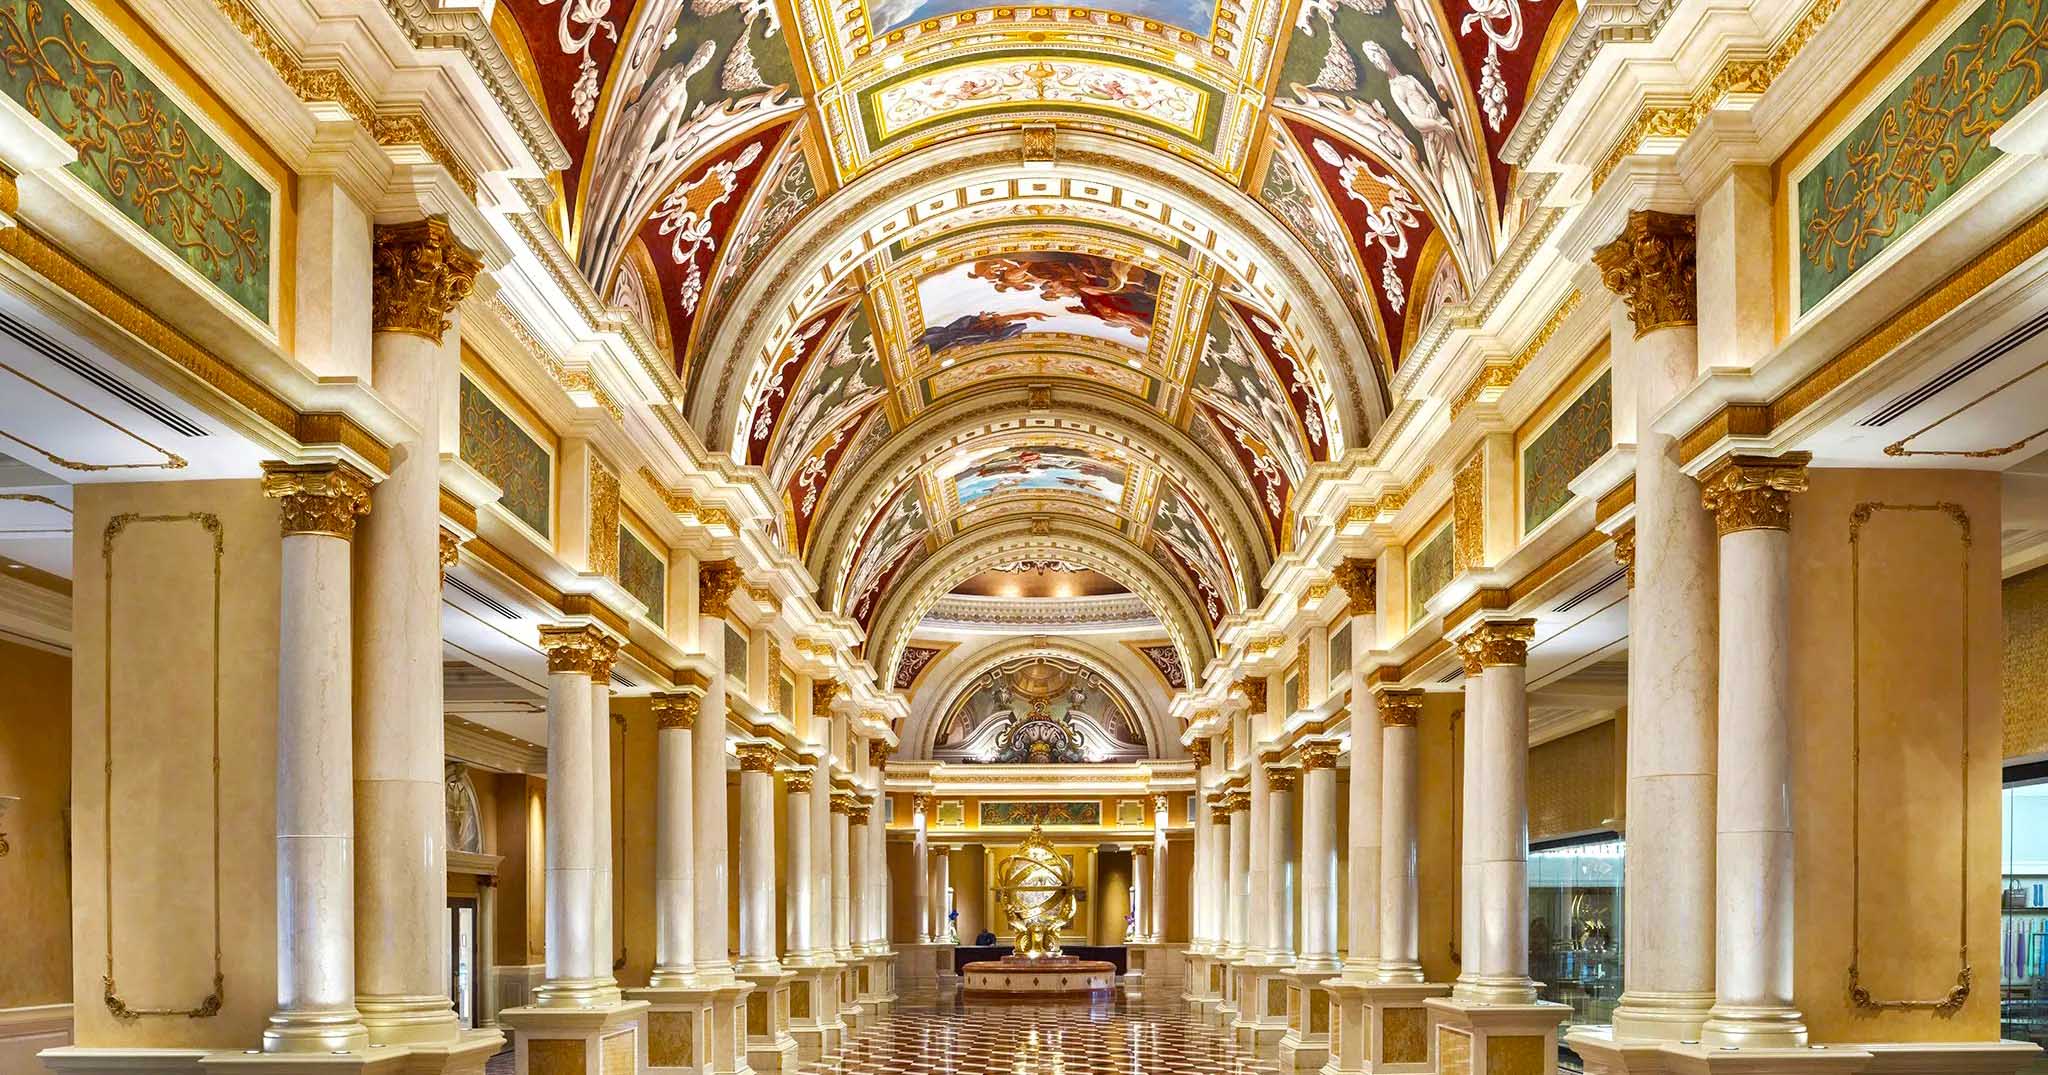 Las Vegas Hotels: The 5 best-looking properties on the Strip